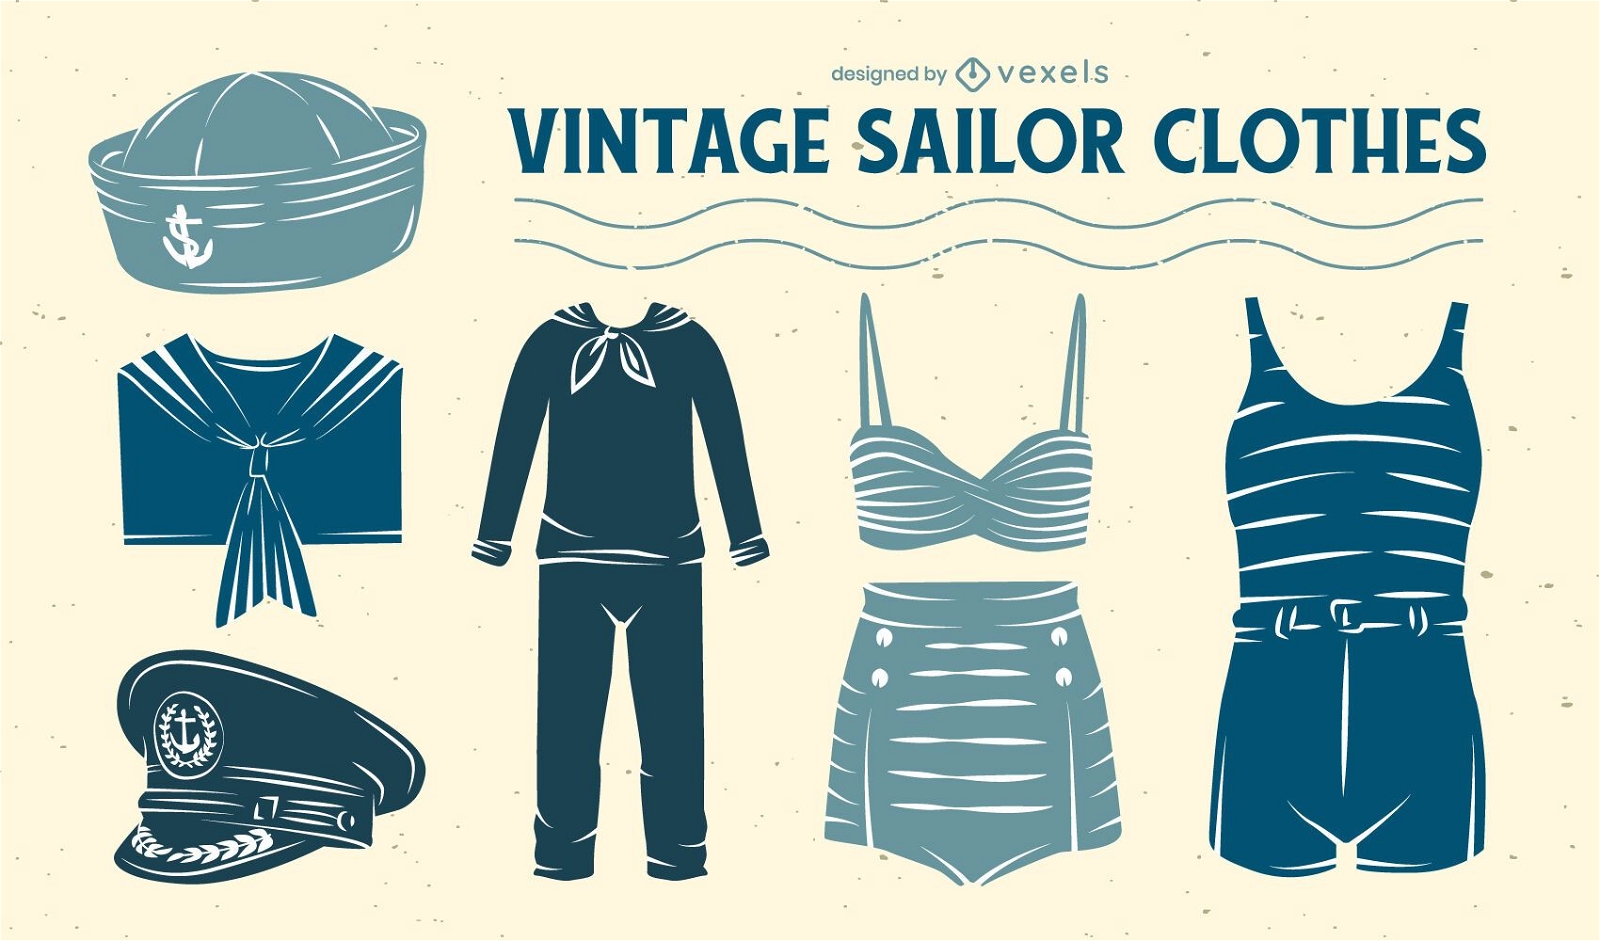 Conjunto de roupas de uniforme de marinheiro estilo vintage